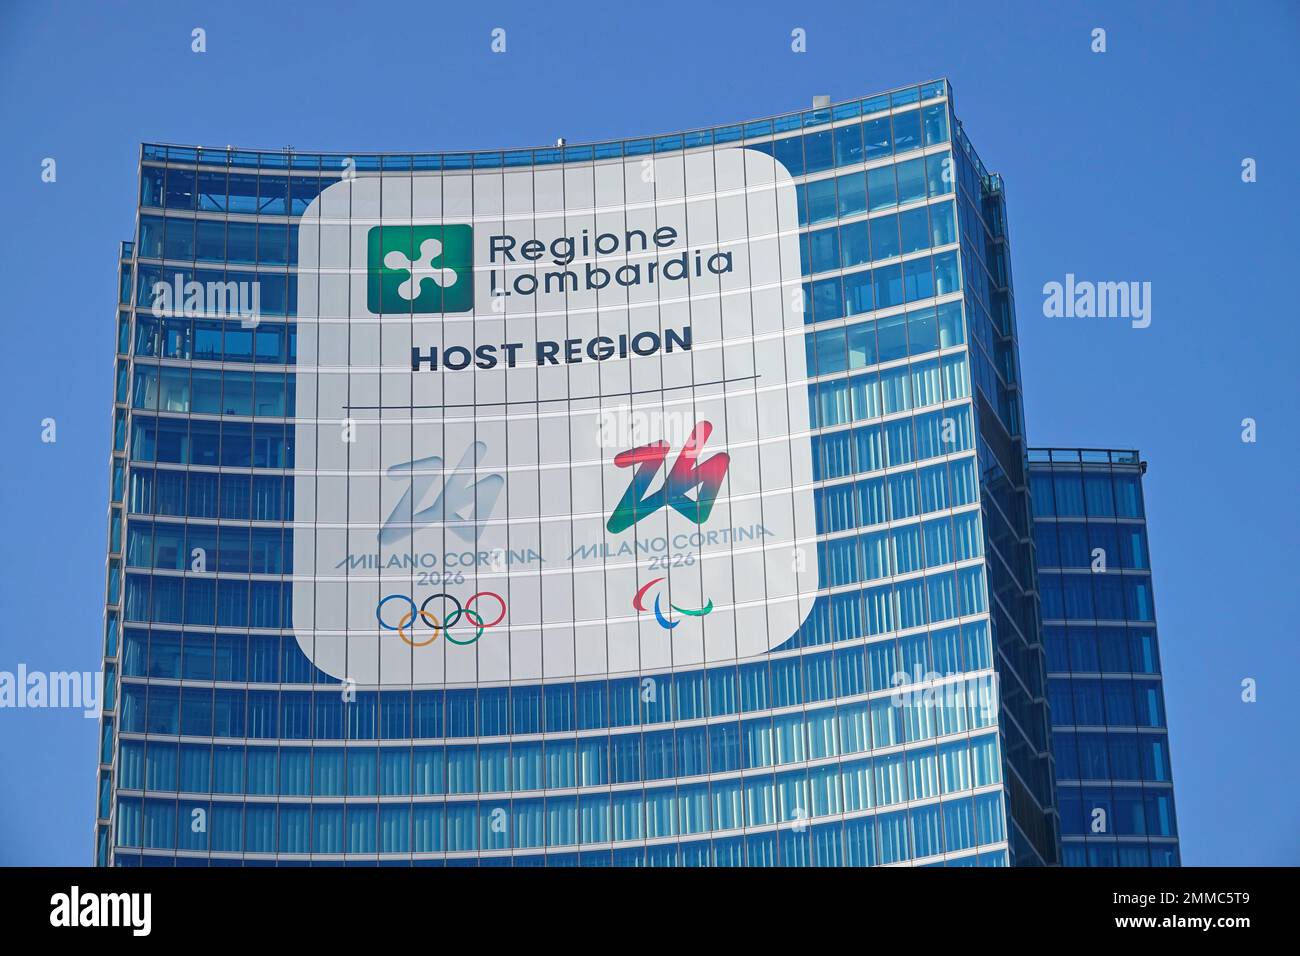 Palazzo Lombardia en Milán, sede del gobierno regional con el logotipo y las imágenes de los Juegos Olímpicos de Invierno Milano Cortina 2026. Milán, Italia Foto de stock